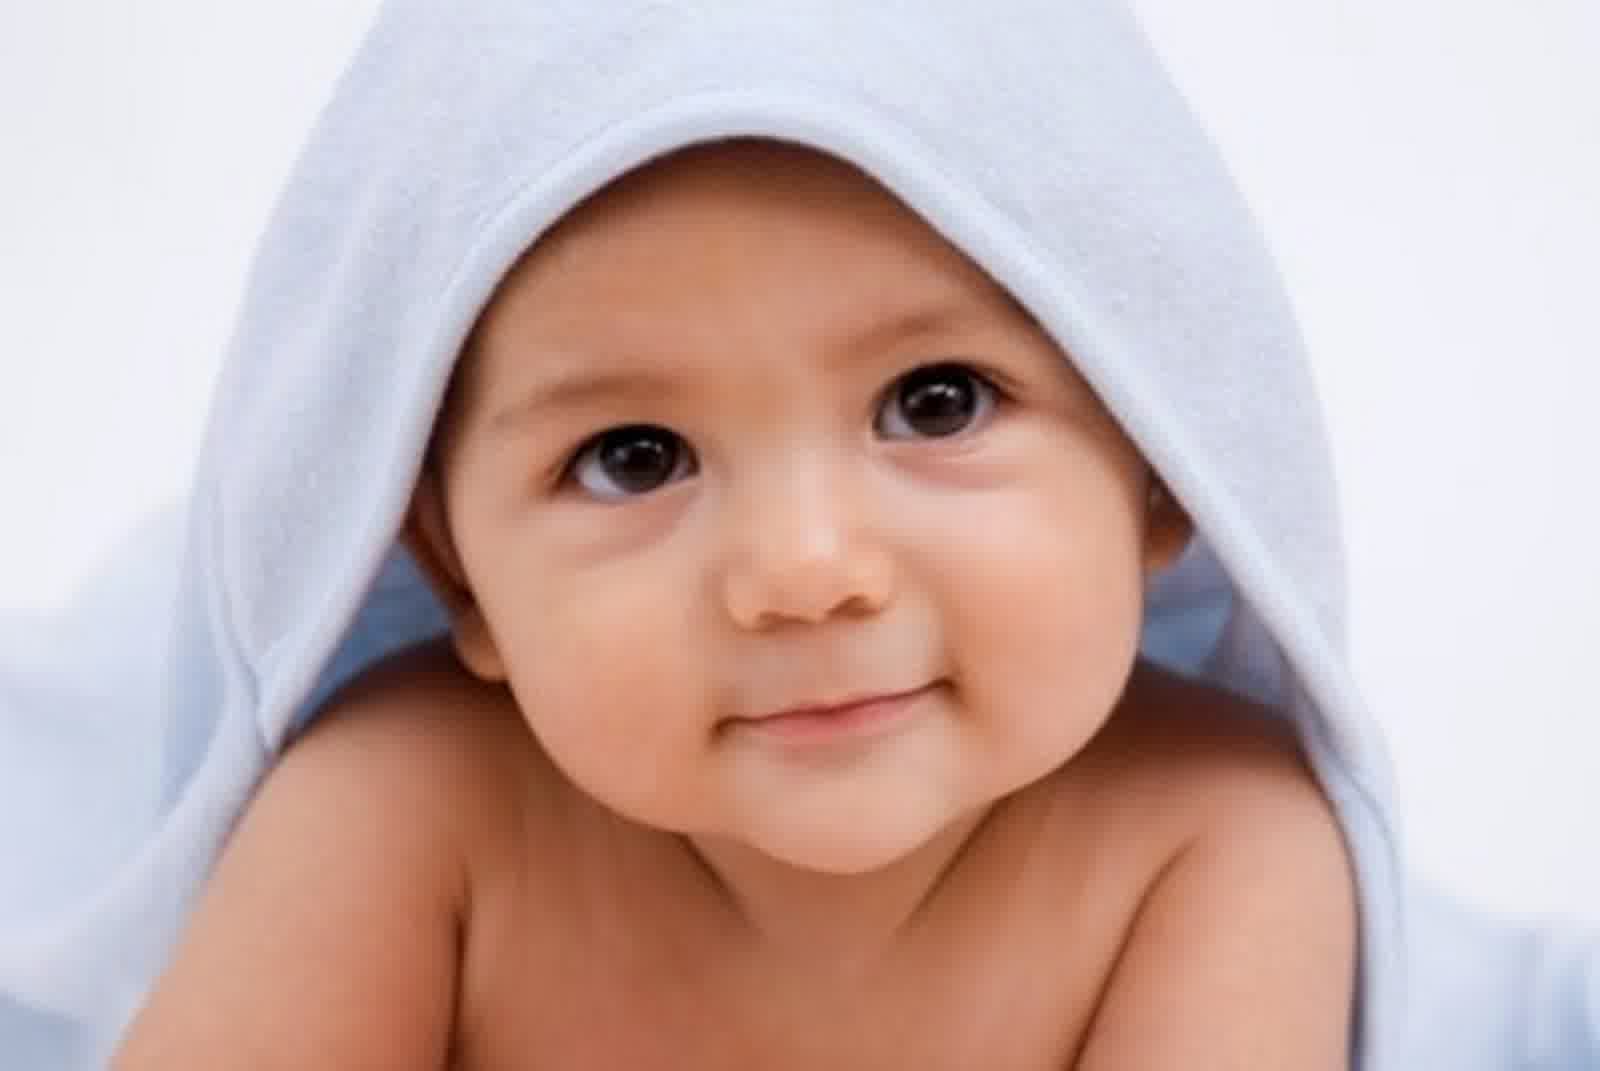 24 Gambarnya Dp Bbm Bayi Lucu Imut Bergerak Terbaru Gambar DP BBM